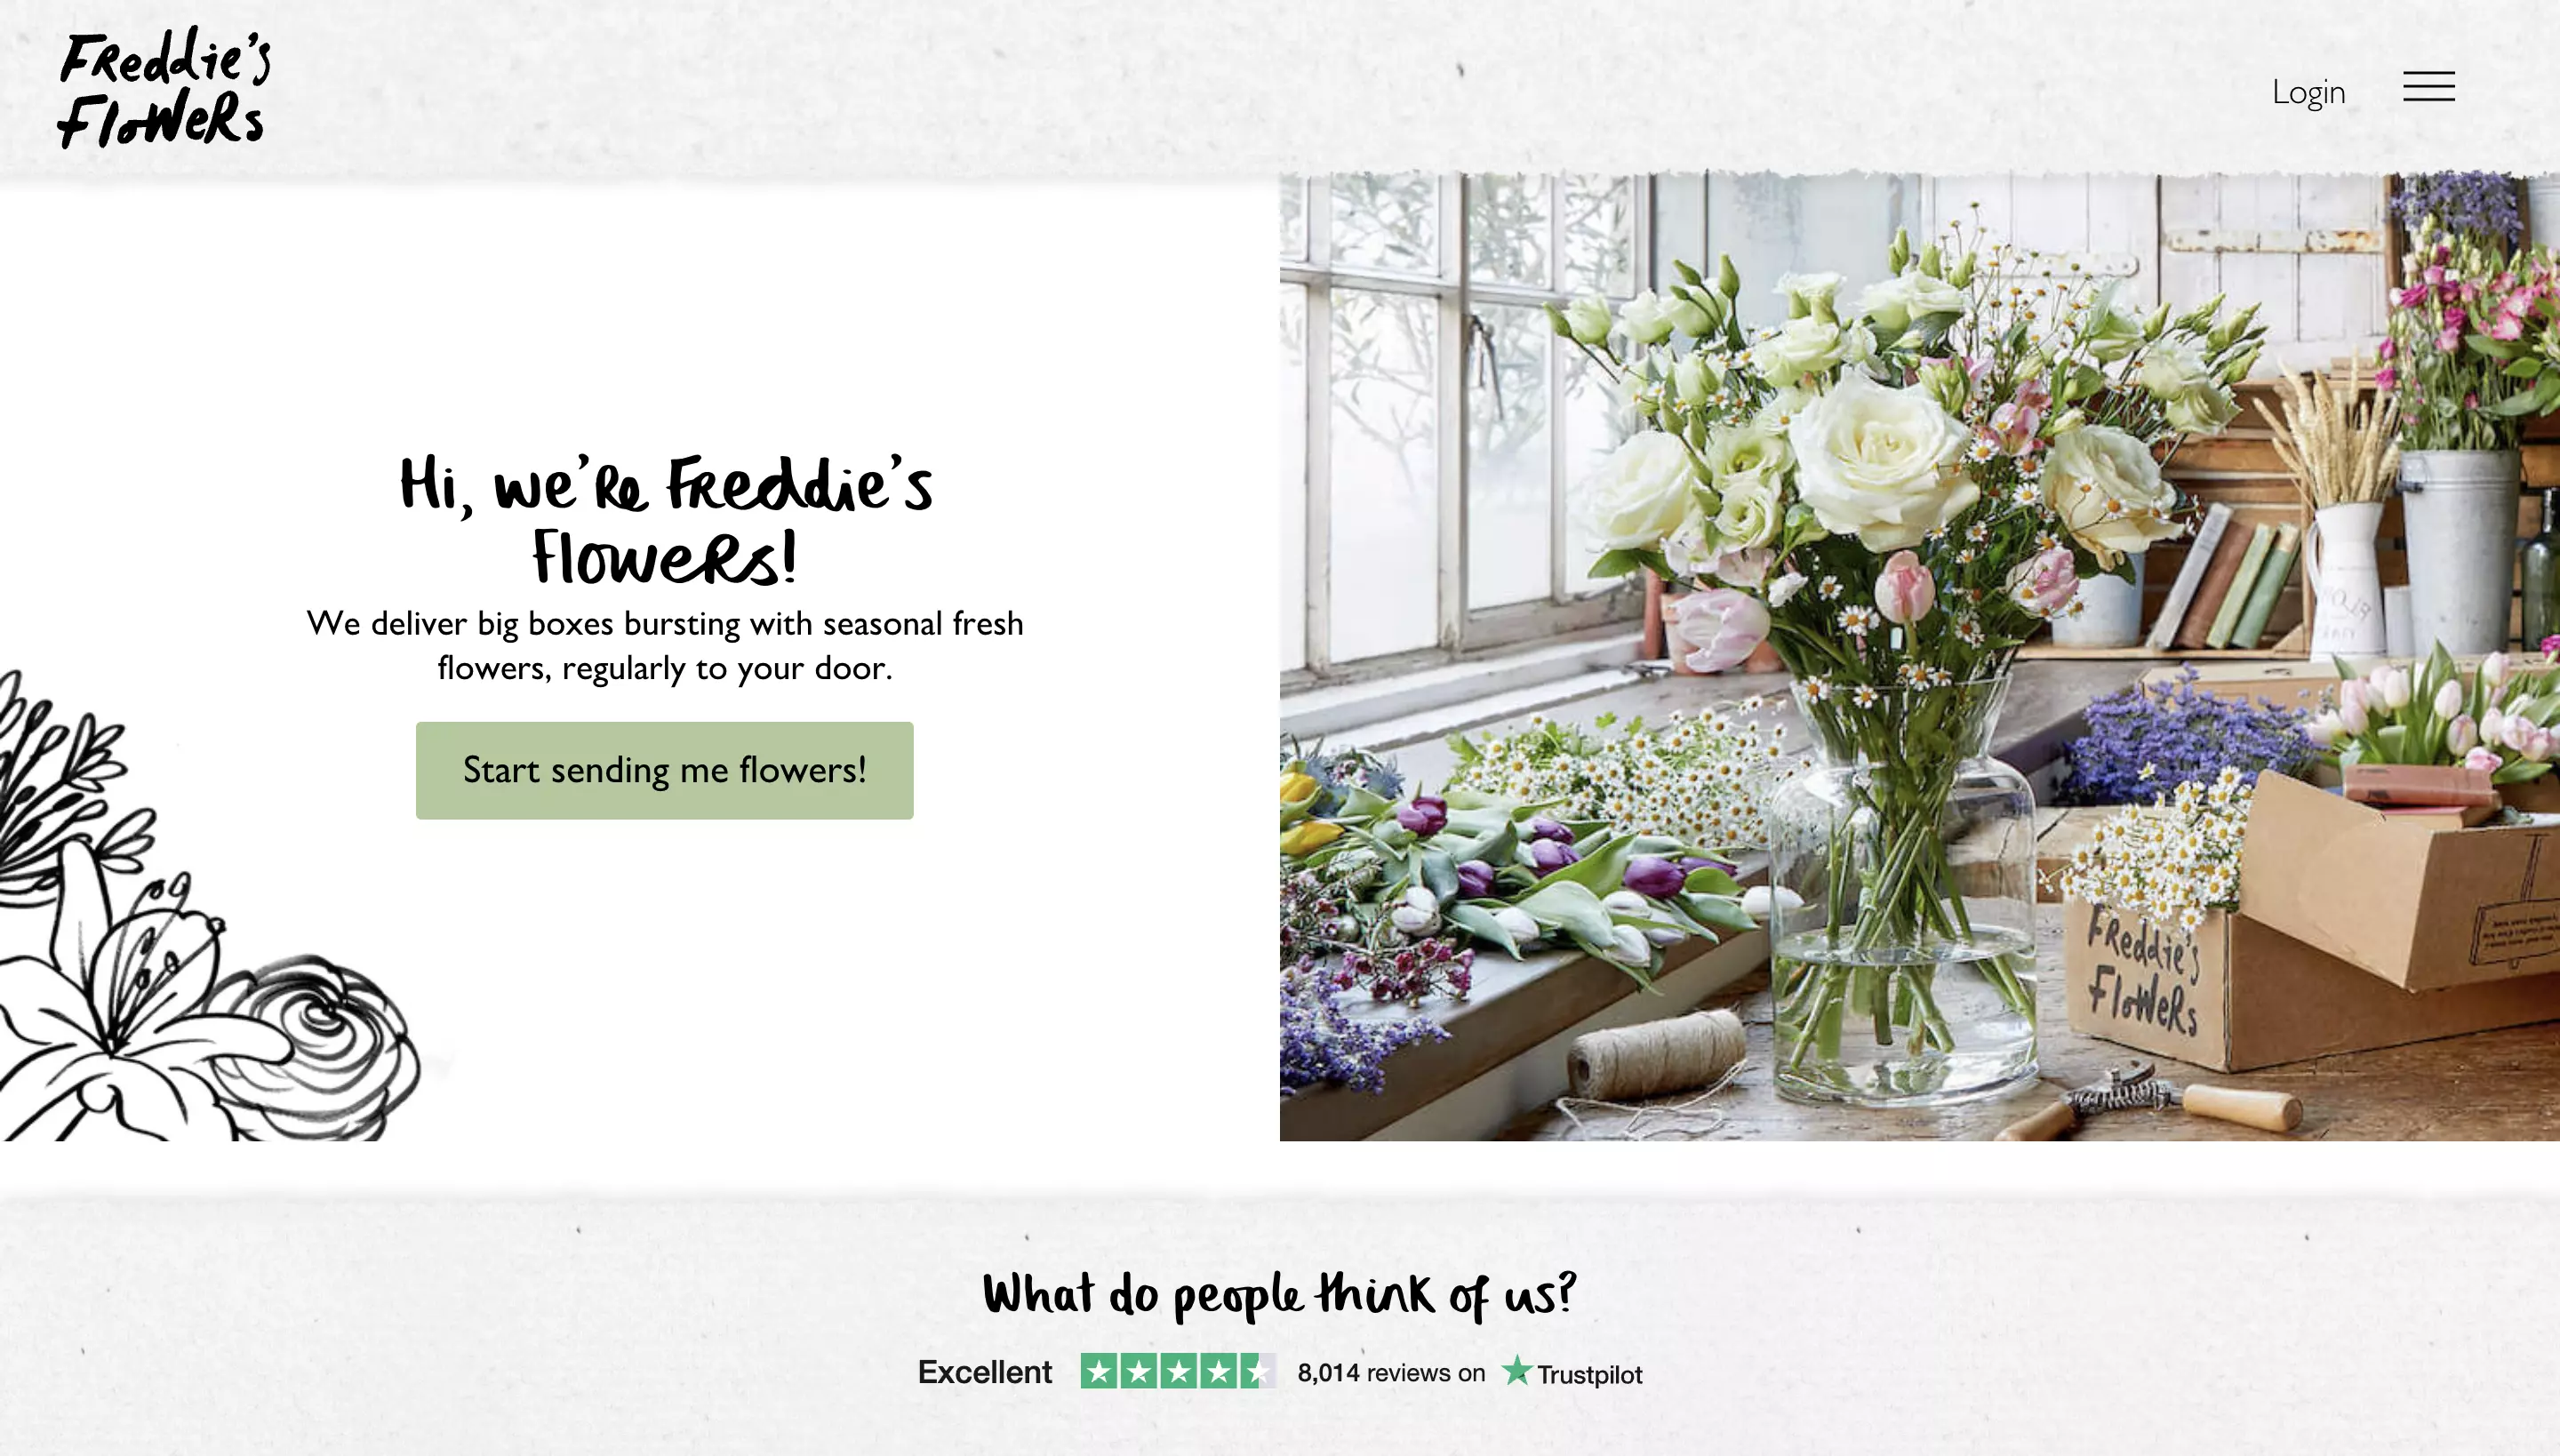 Freddie's Flowers homepage 